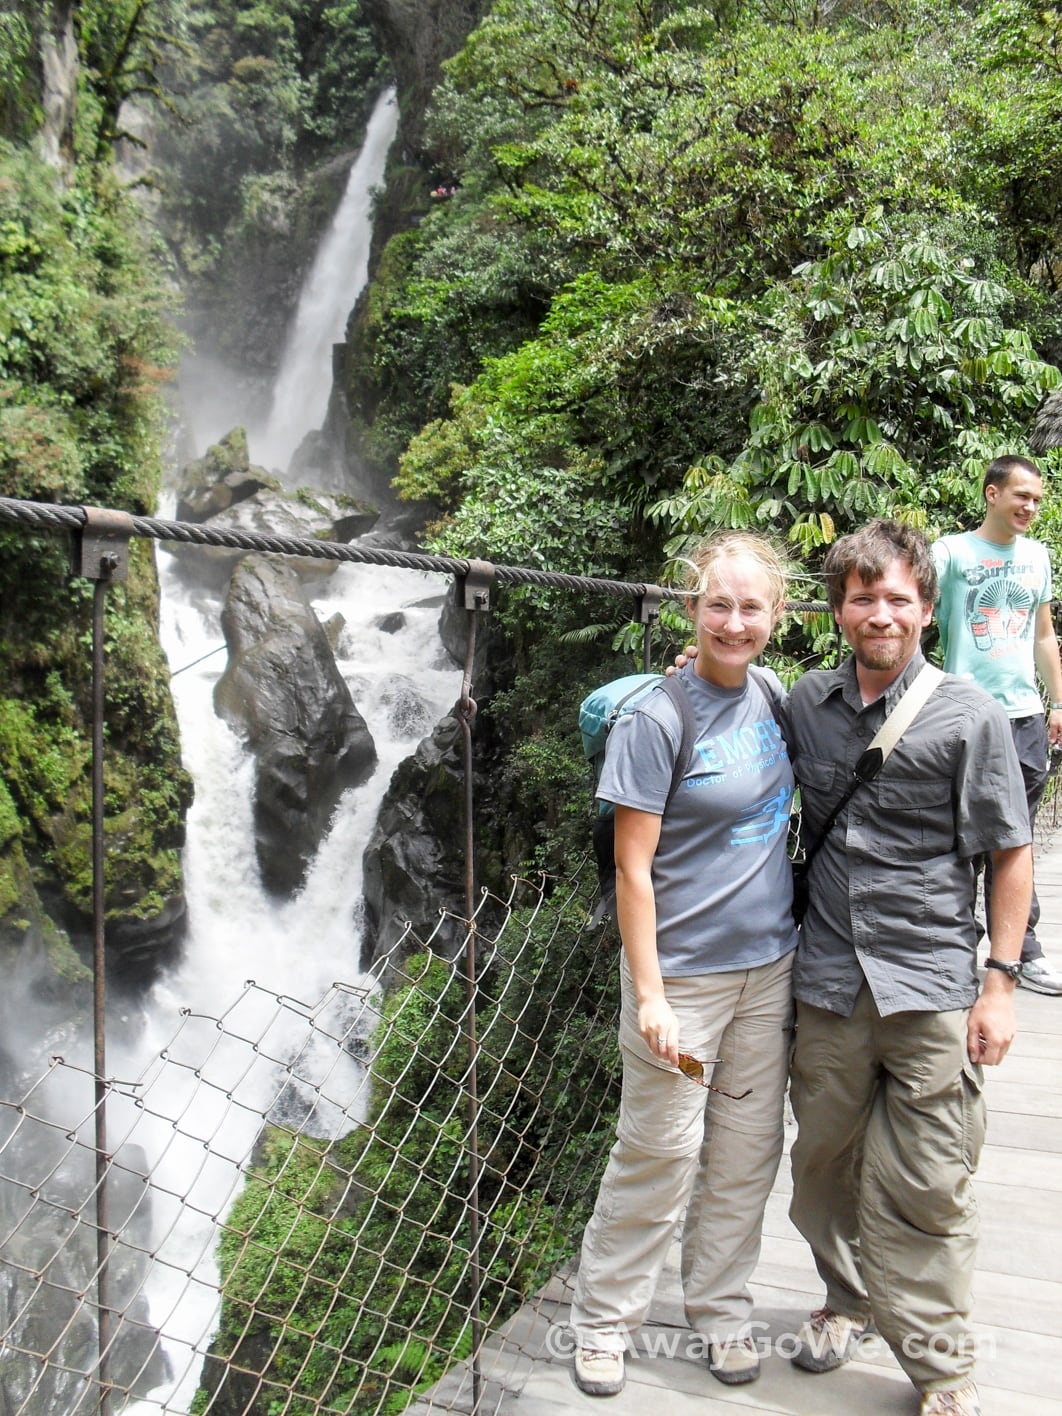 Baños Ecuador Waterfall Route Ruta de las Cascadas